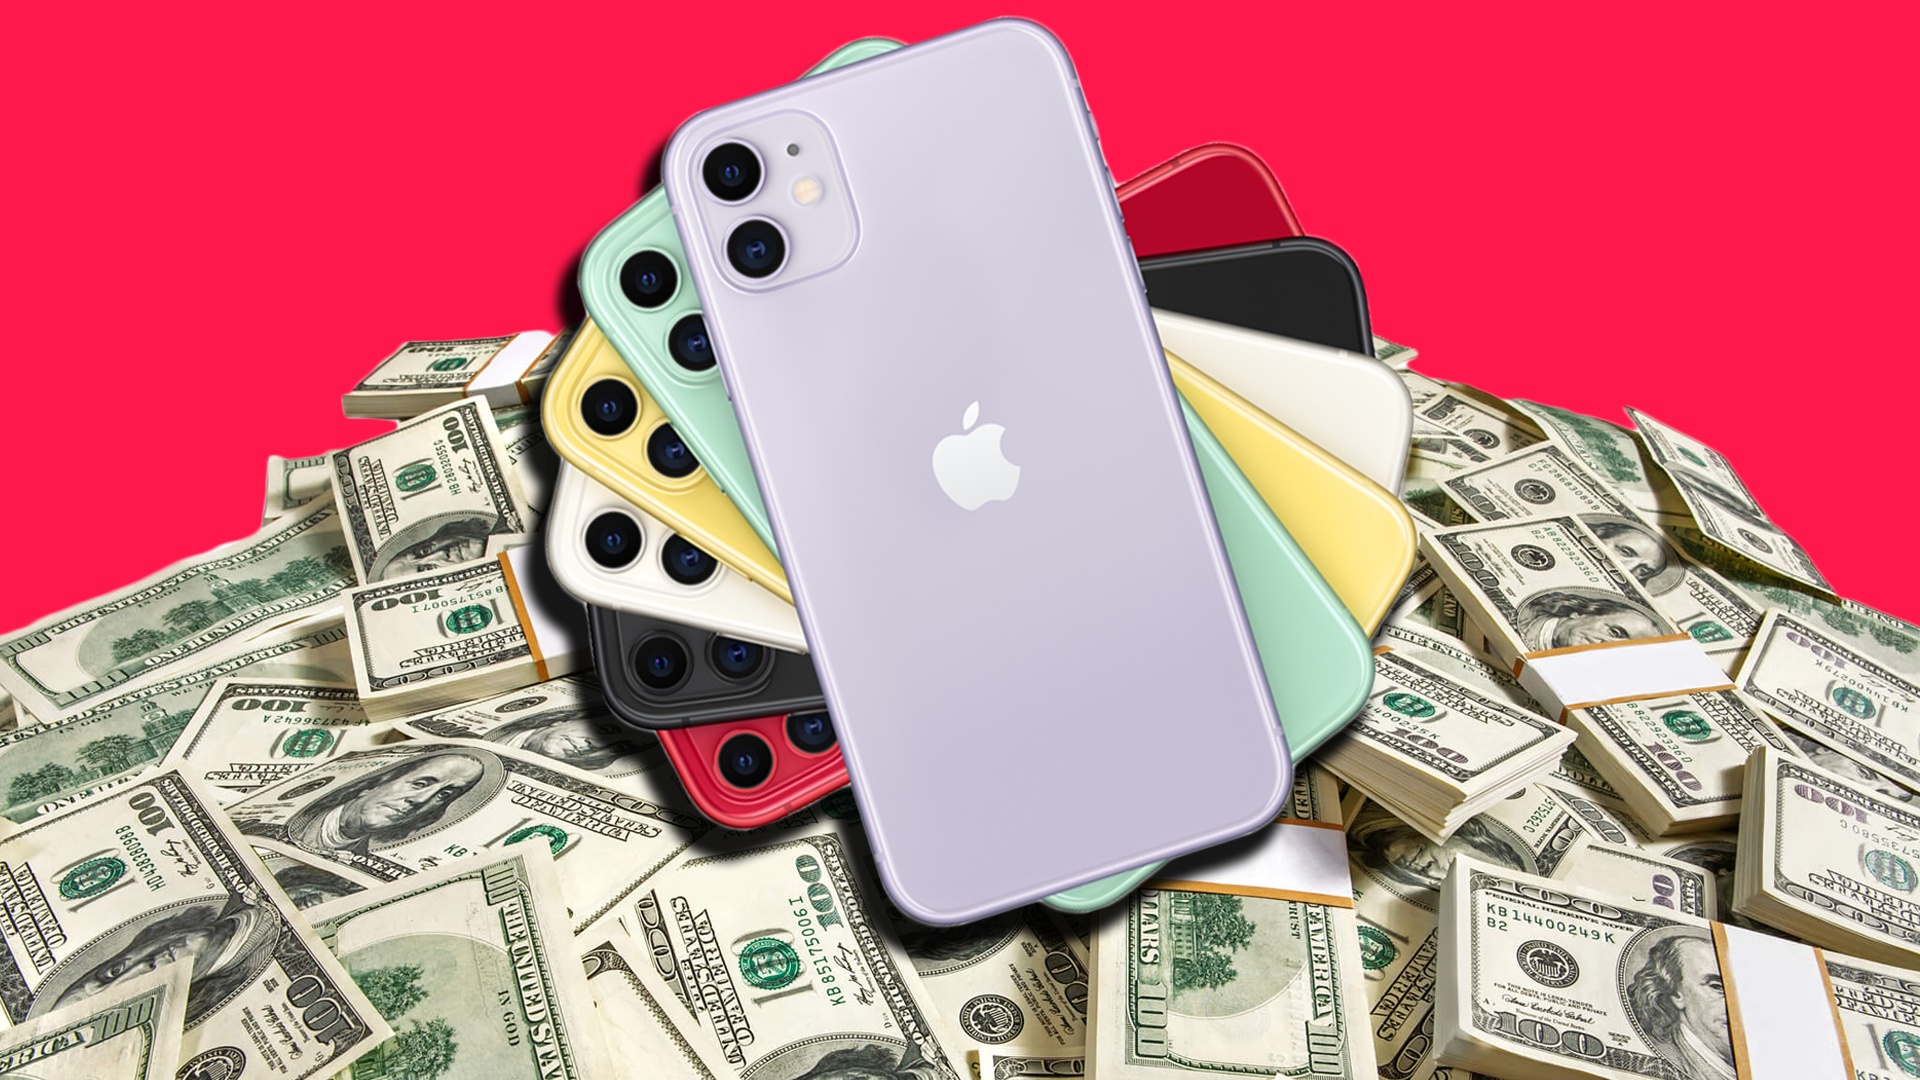 #Für 10.000 Dollar nie wieder ein iPhone kaufen: Ein Angebot, dass jeder Apple-Fan ausschlagen würde?